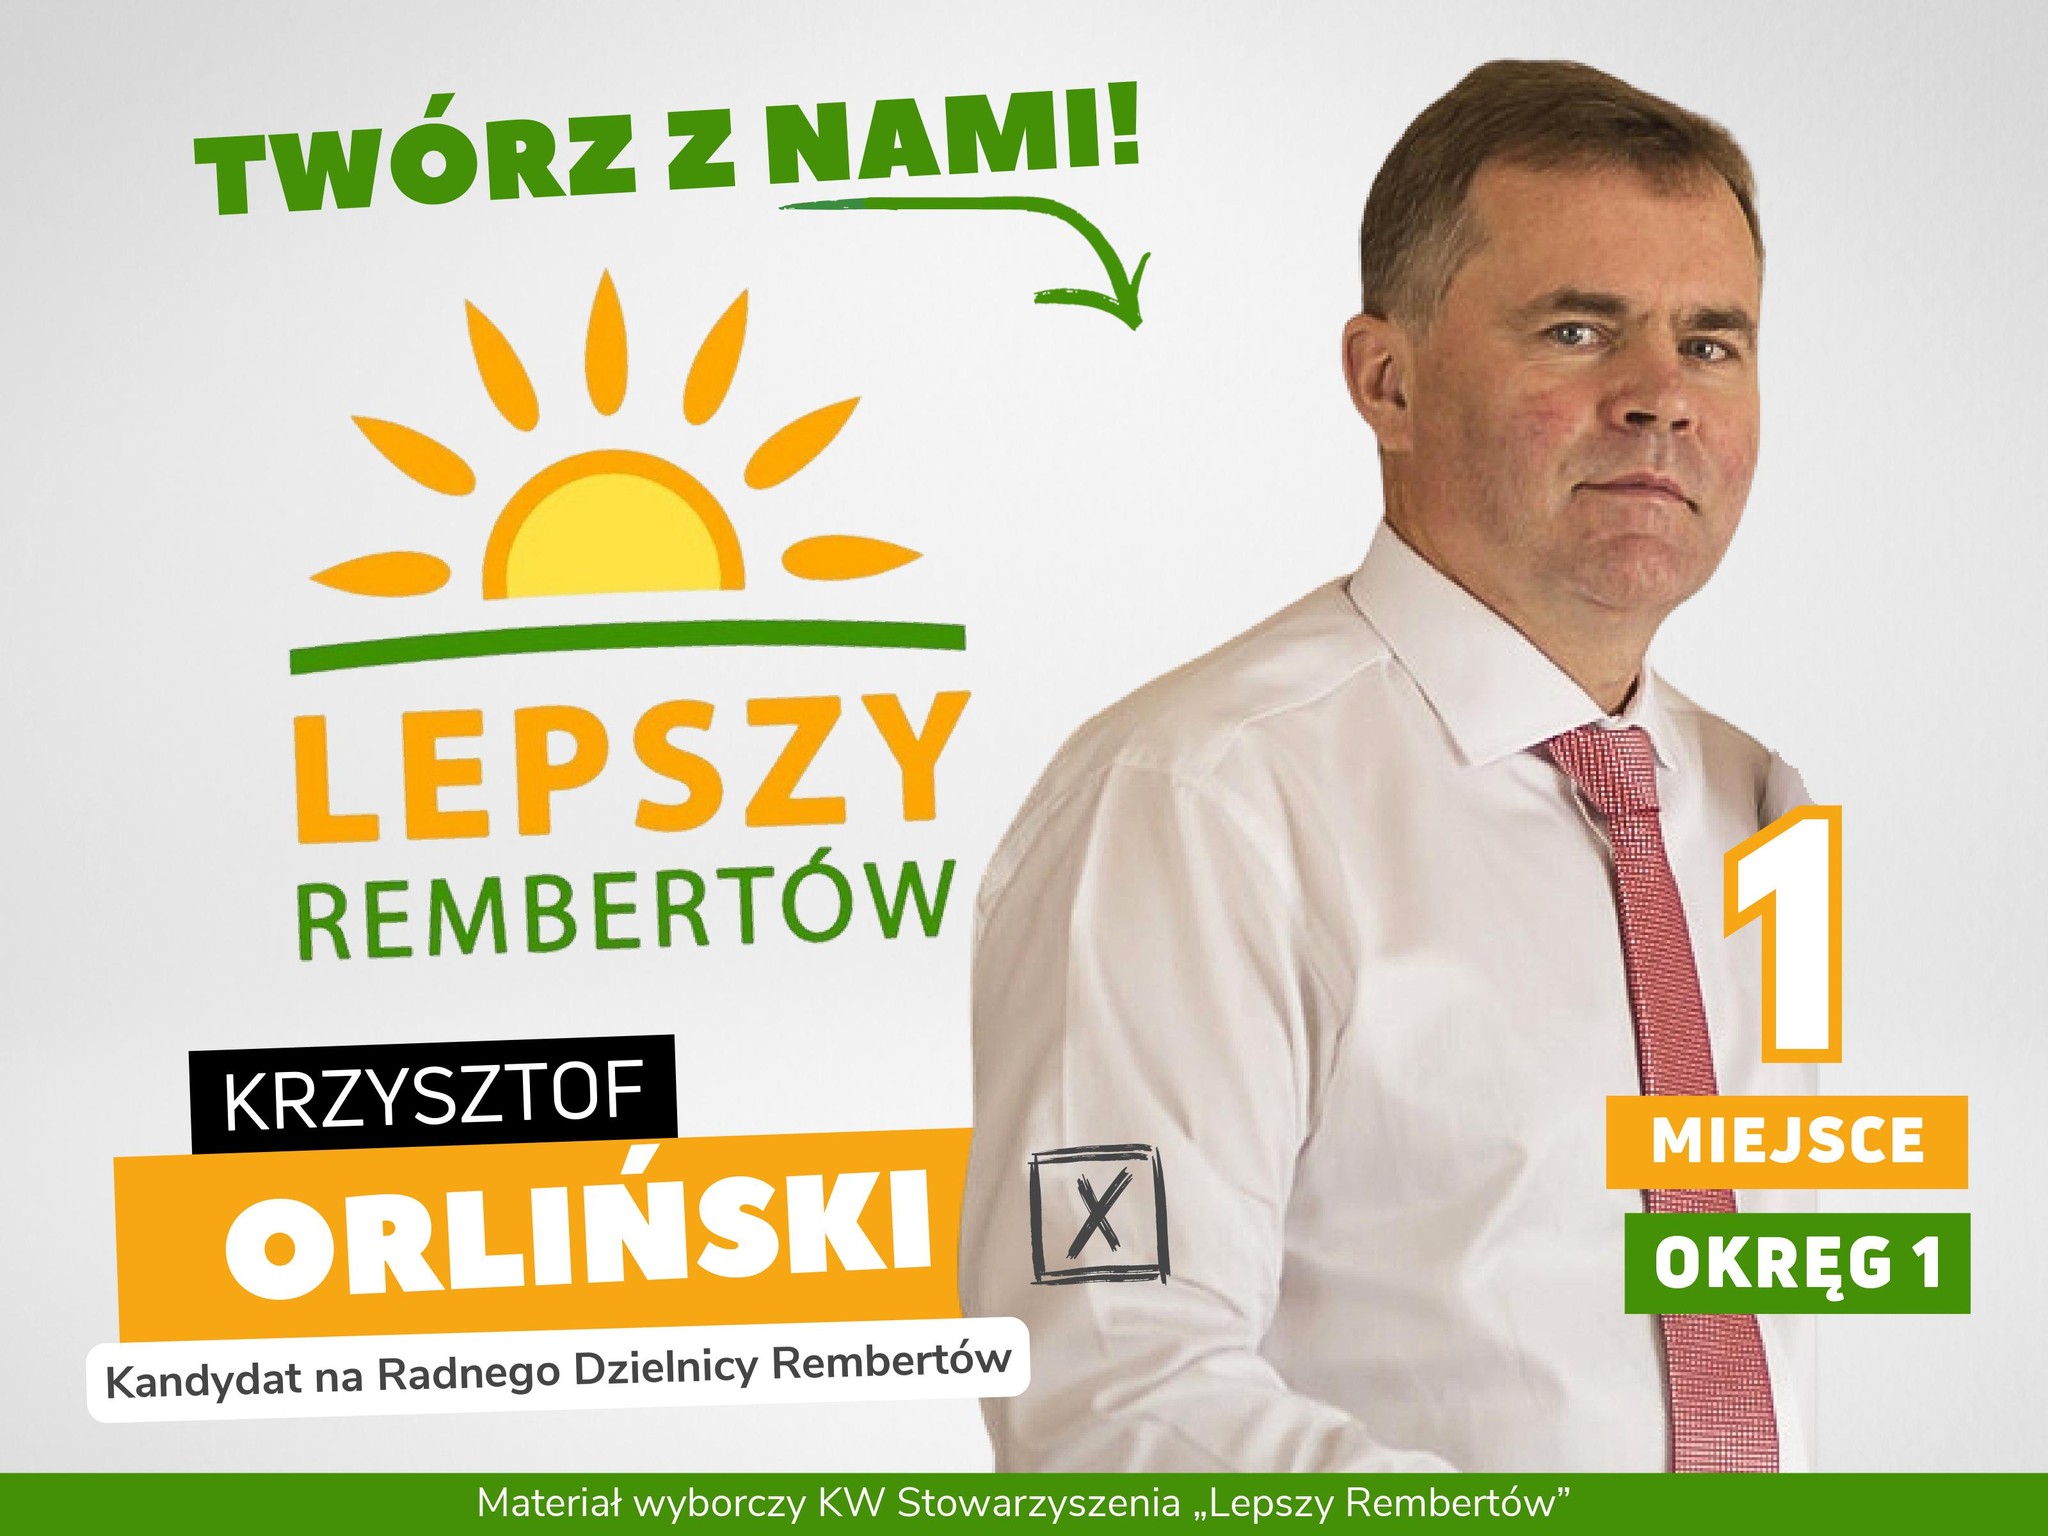 Krzysztof Orliński Okręg 1 miejsce 1